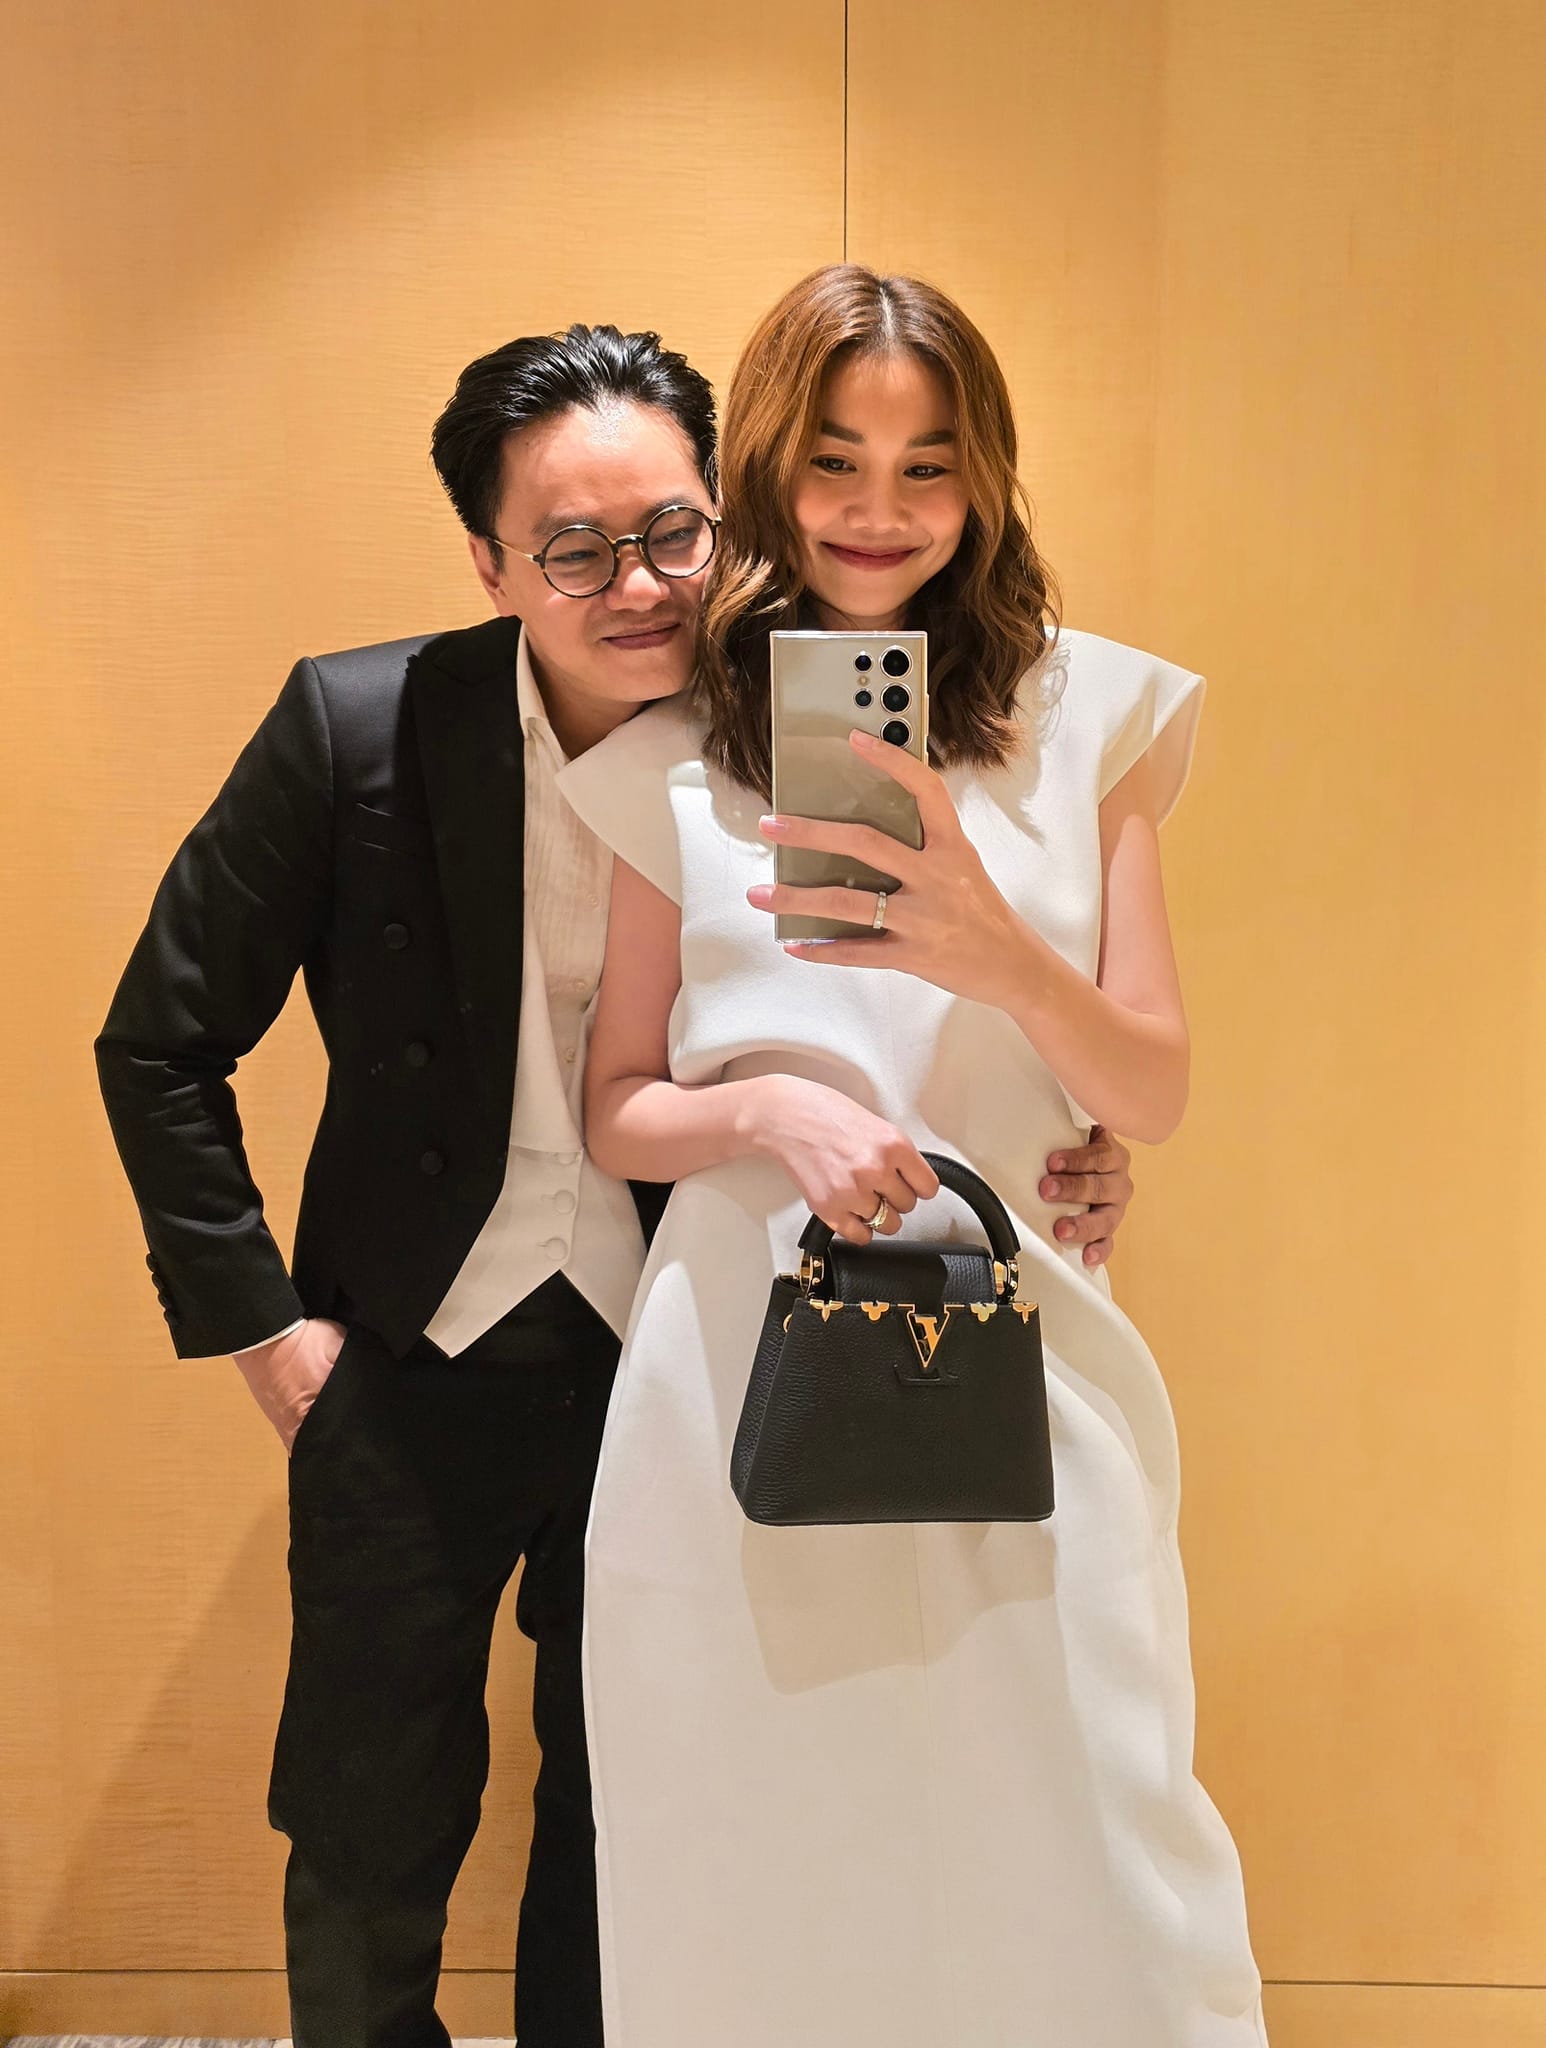 Siêu mẫu Thanh Hằng tiết lộ cuộc sống hôn nhân với chồng nhạc trưởng- Ảnh 5.